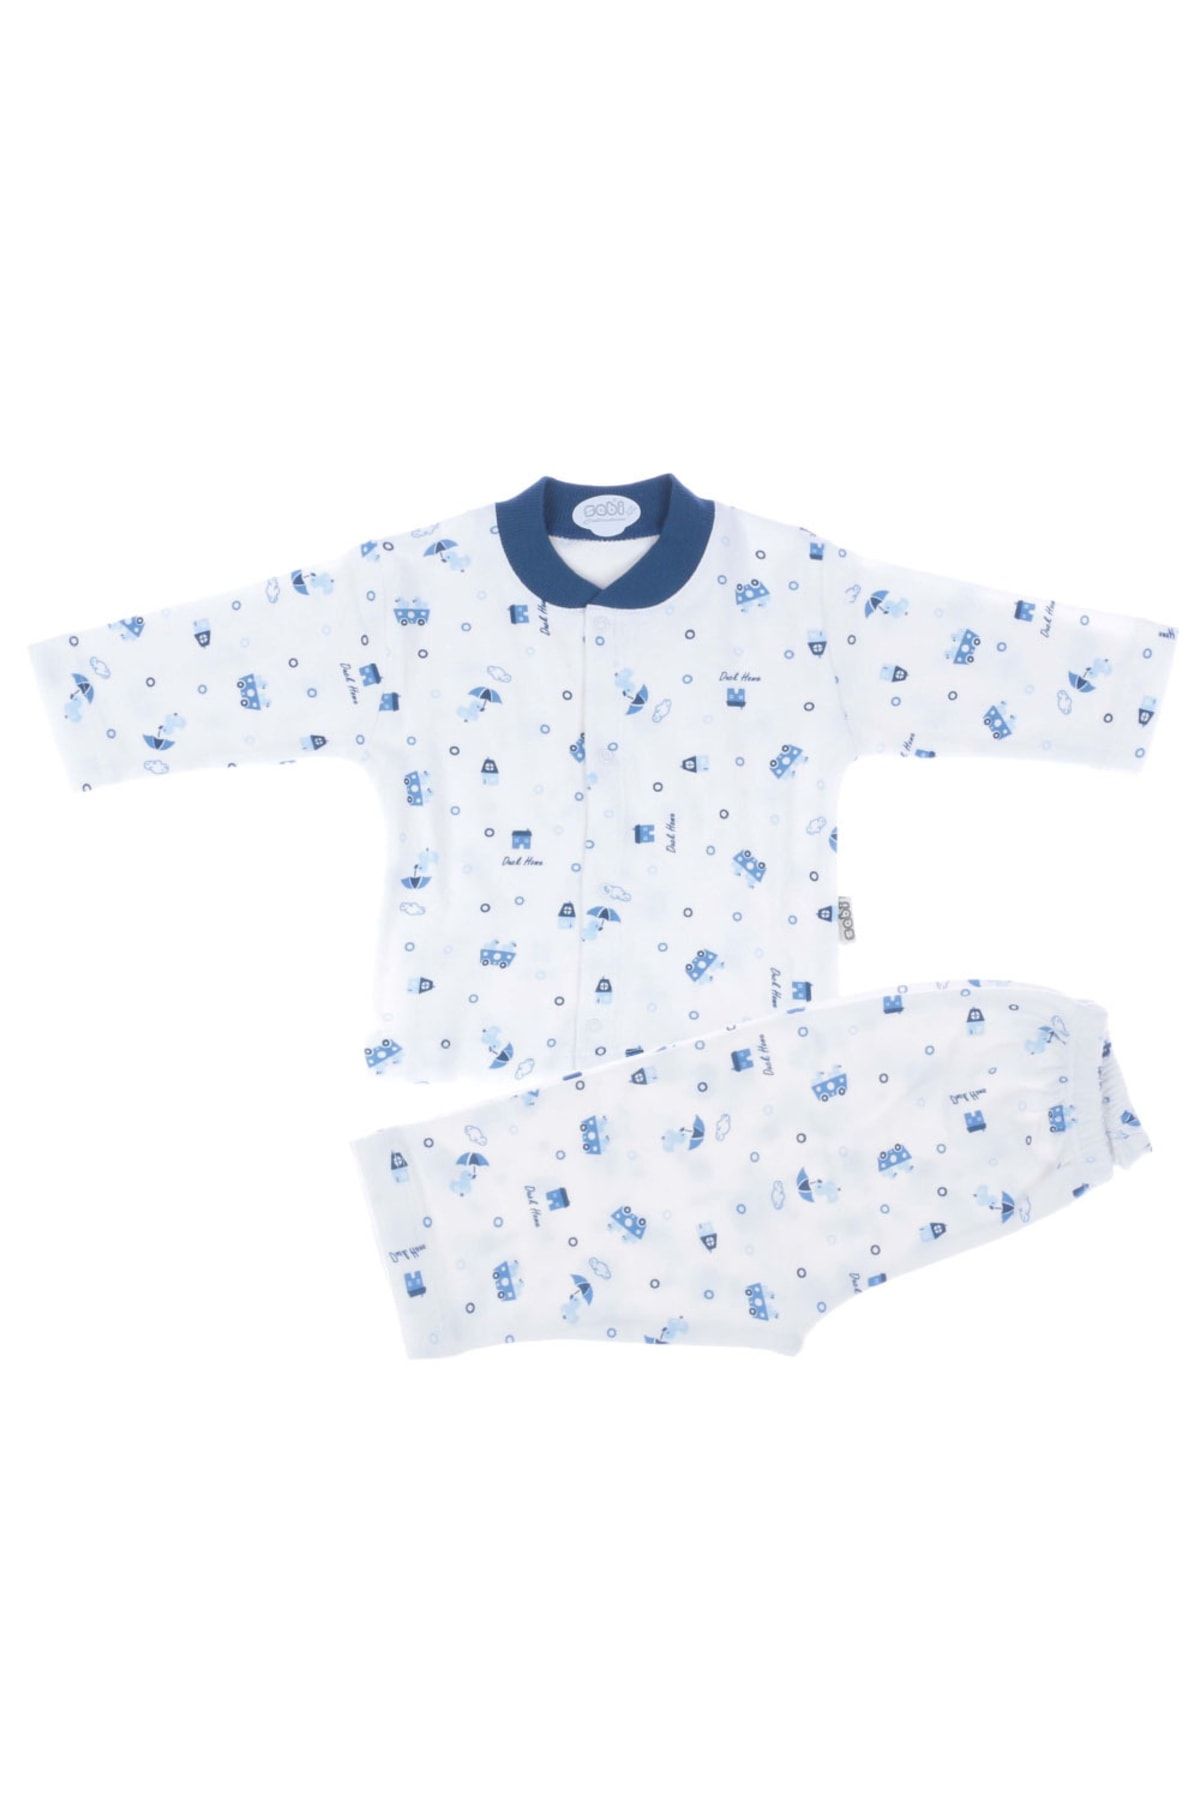 Sebi Bebe Bebek Pijama Takımı Lüx Desenli Civciv Baskılı